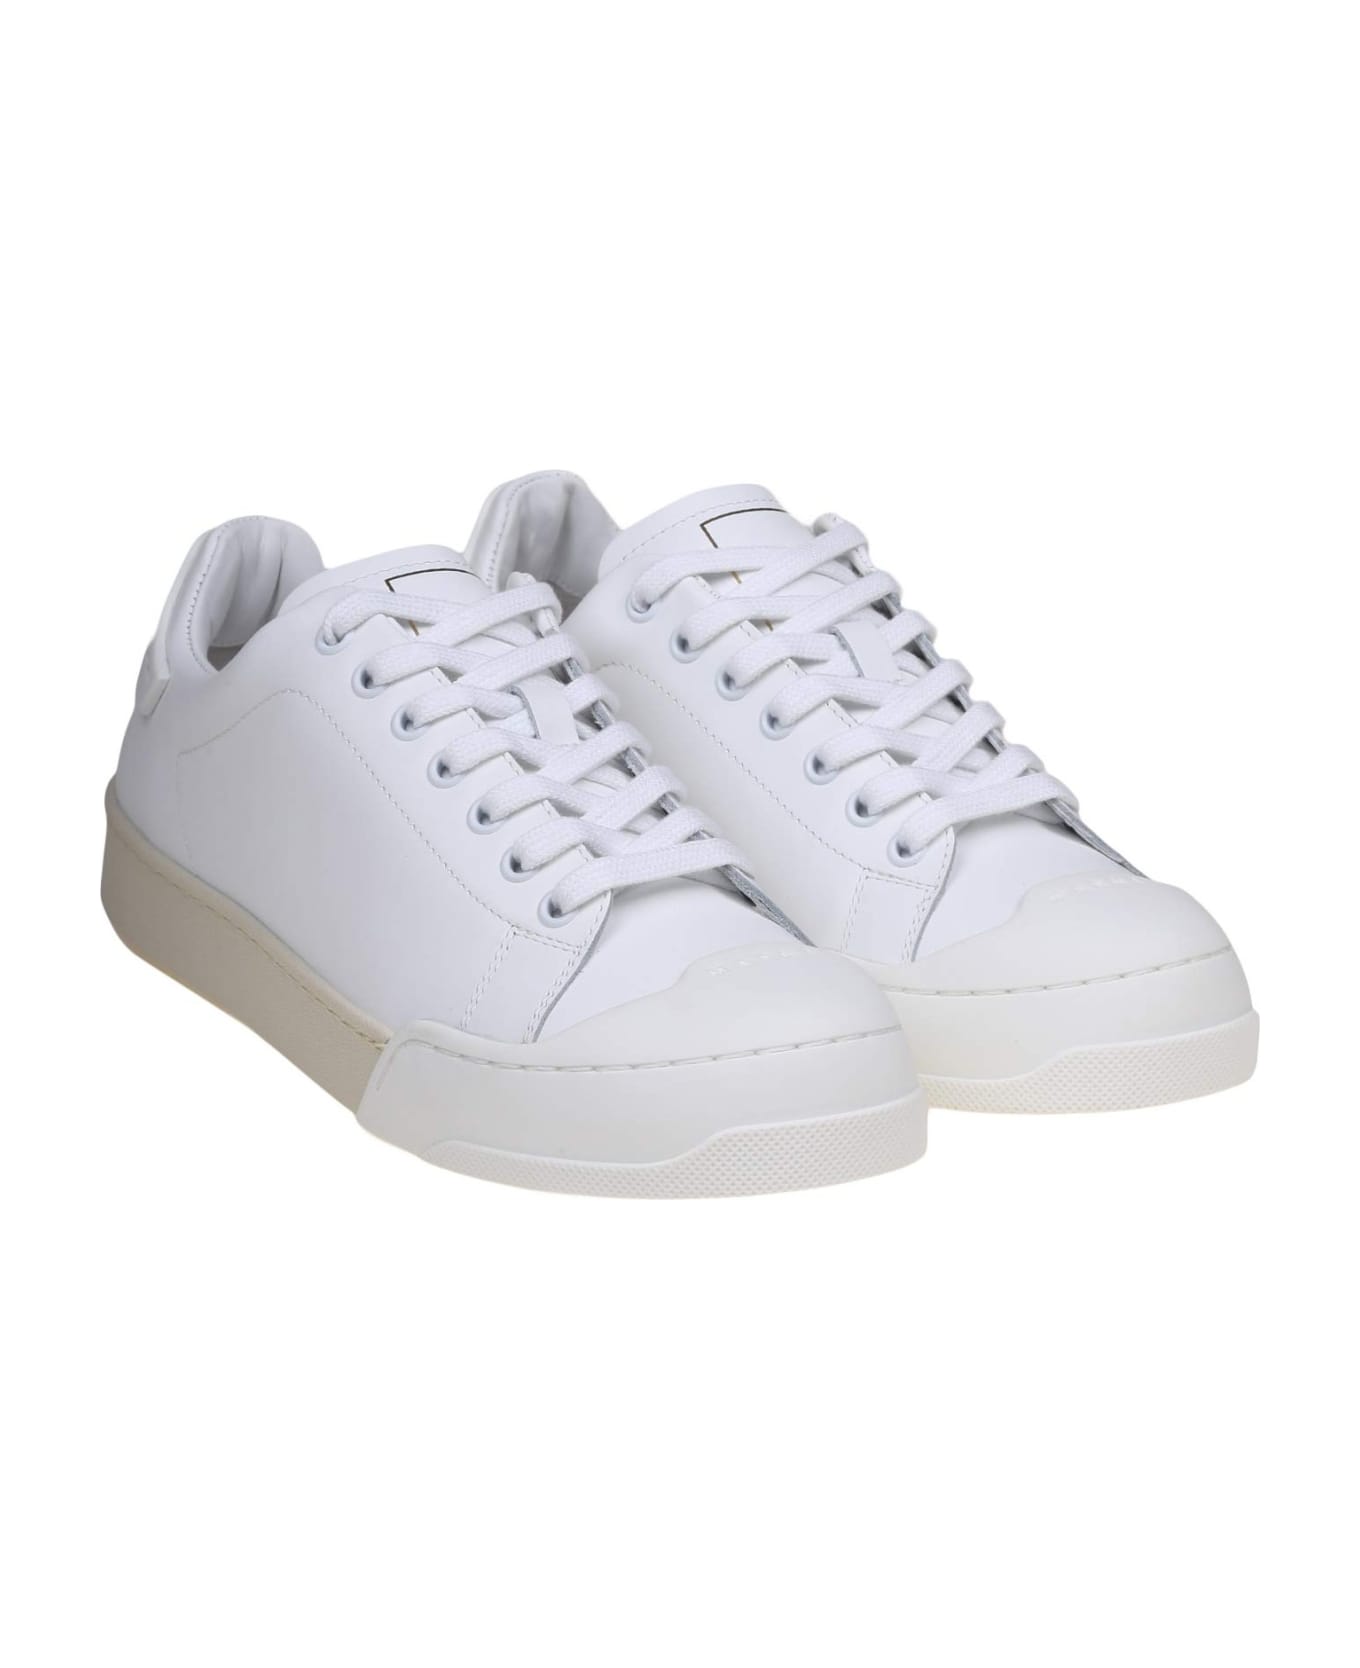 Marni Dada Bumper Sneakers In White Leather - WHITE